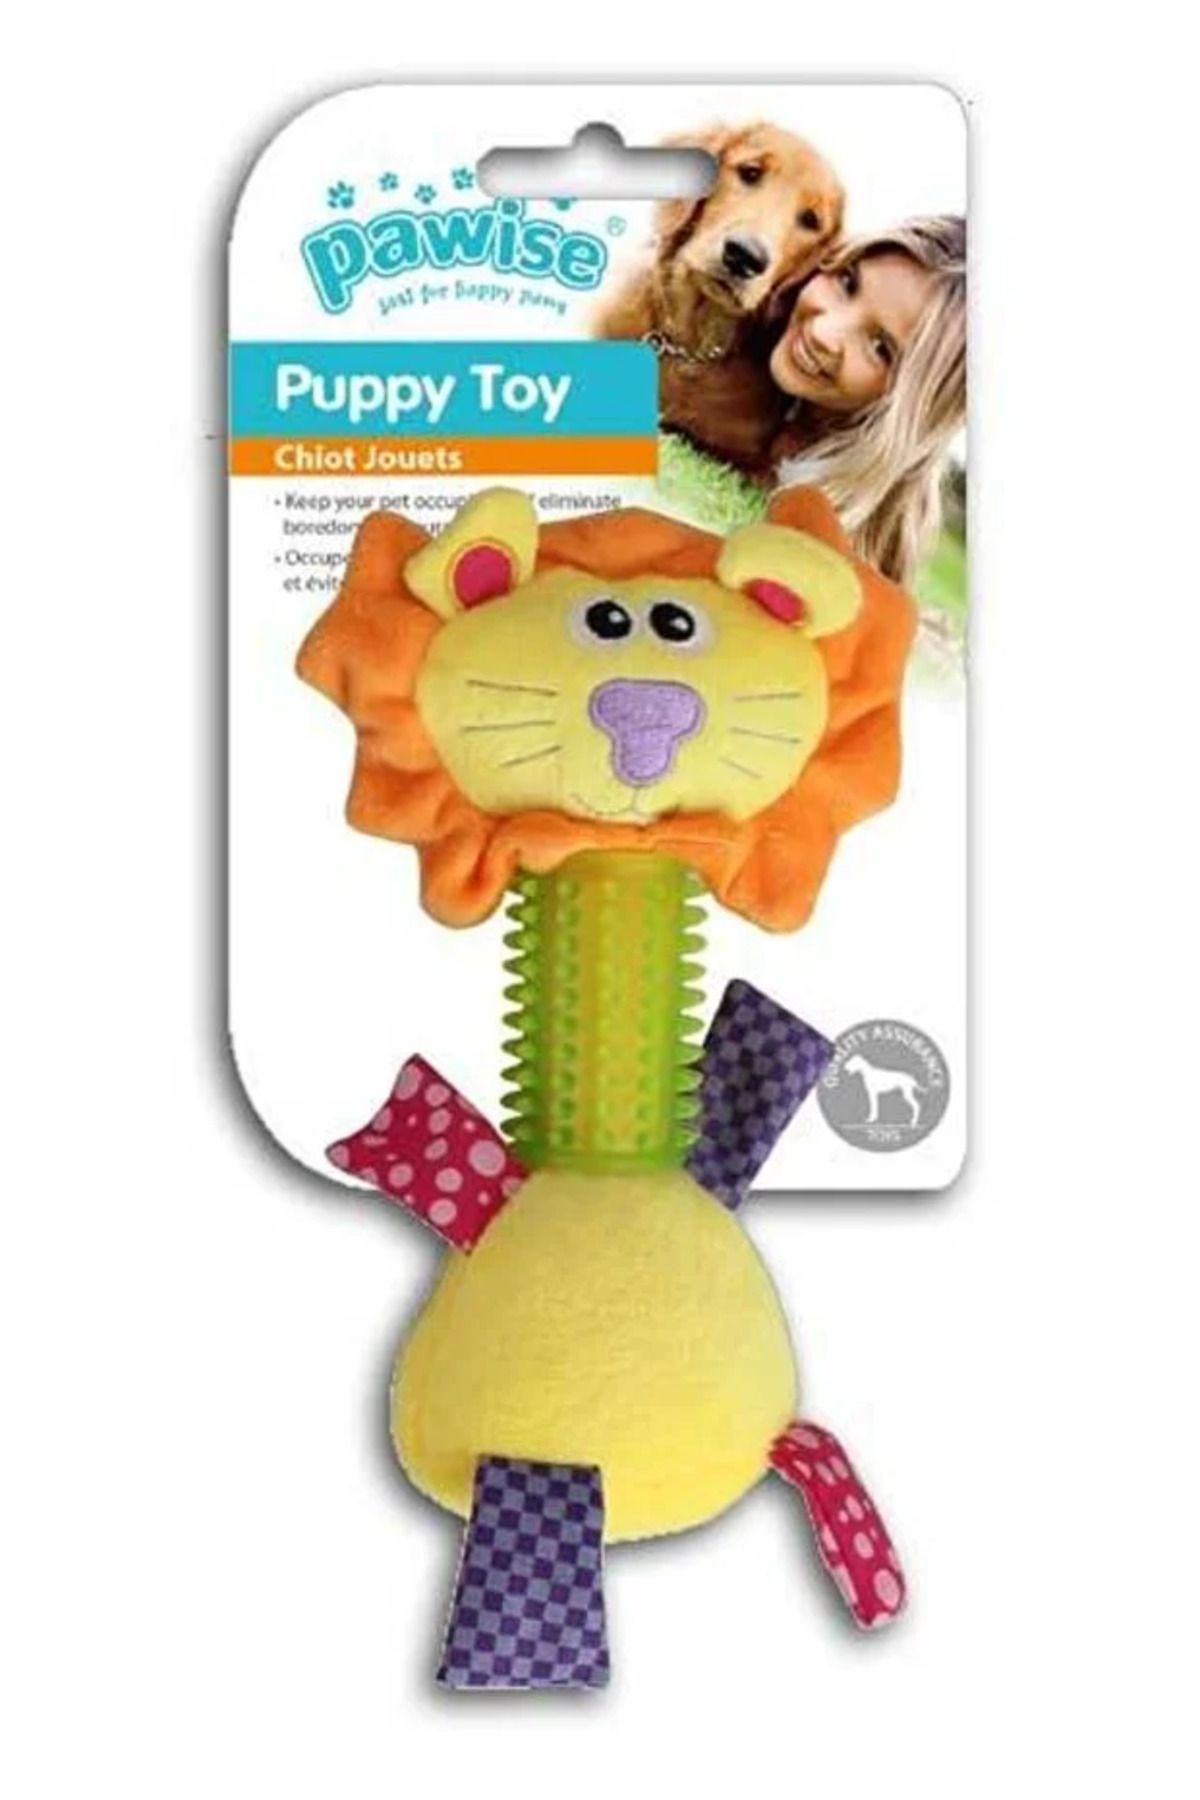 Pawise Dog Toy Aslan Oyuncak 26 Cm Köpek Oyuncağı Lion Toy 26 inch Dog Toy